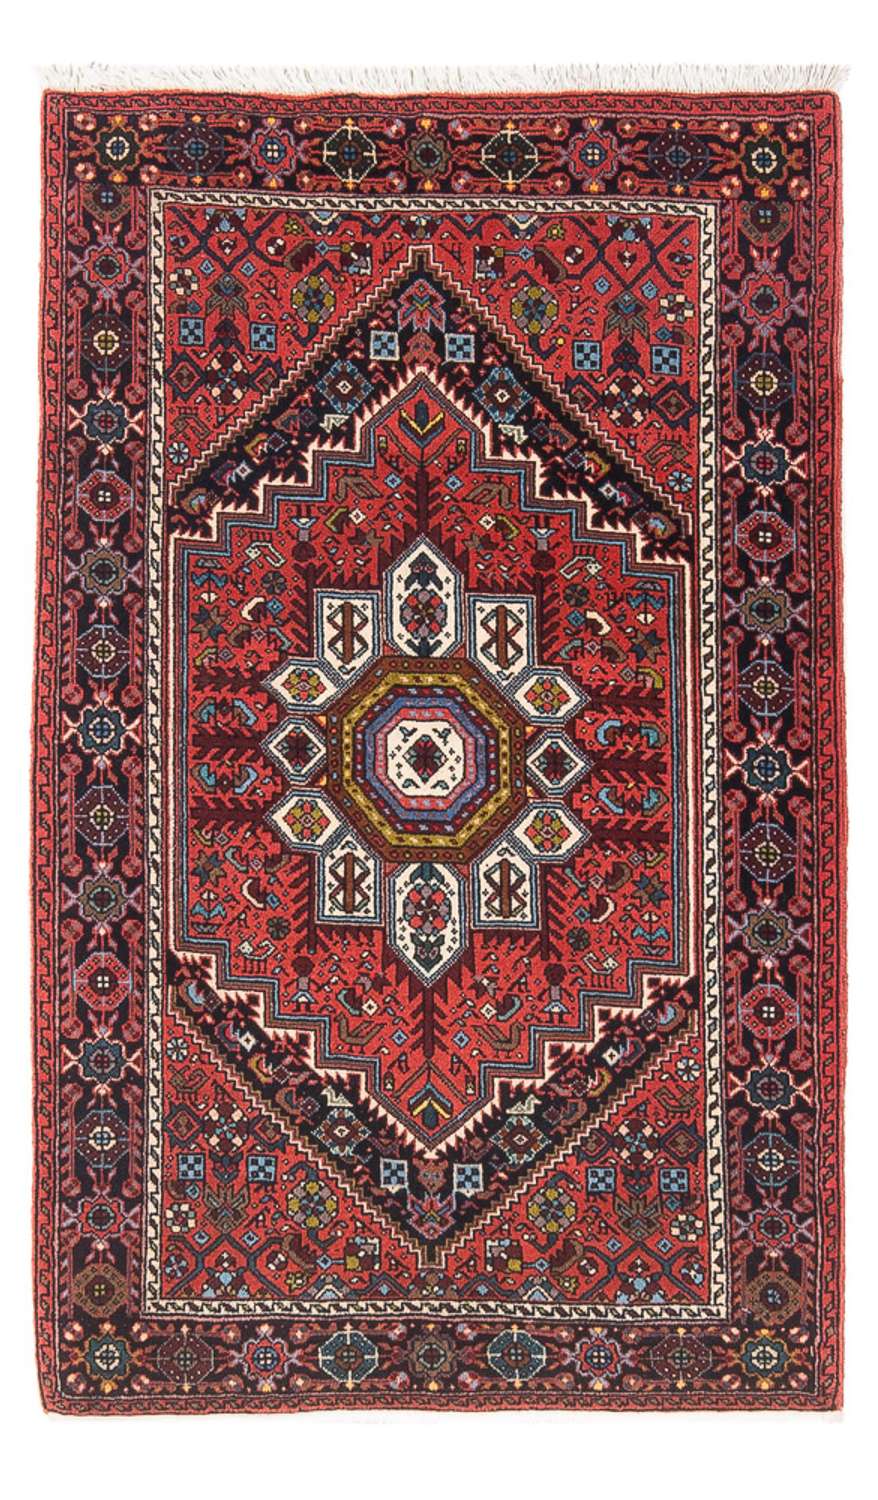 Tapis persan - Nomadic - 129 x 70 cm - rouge